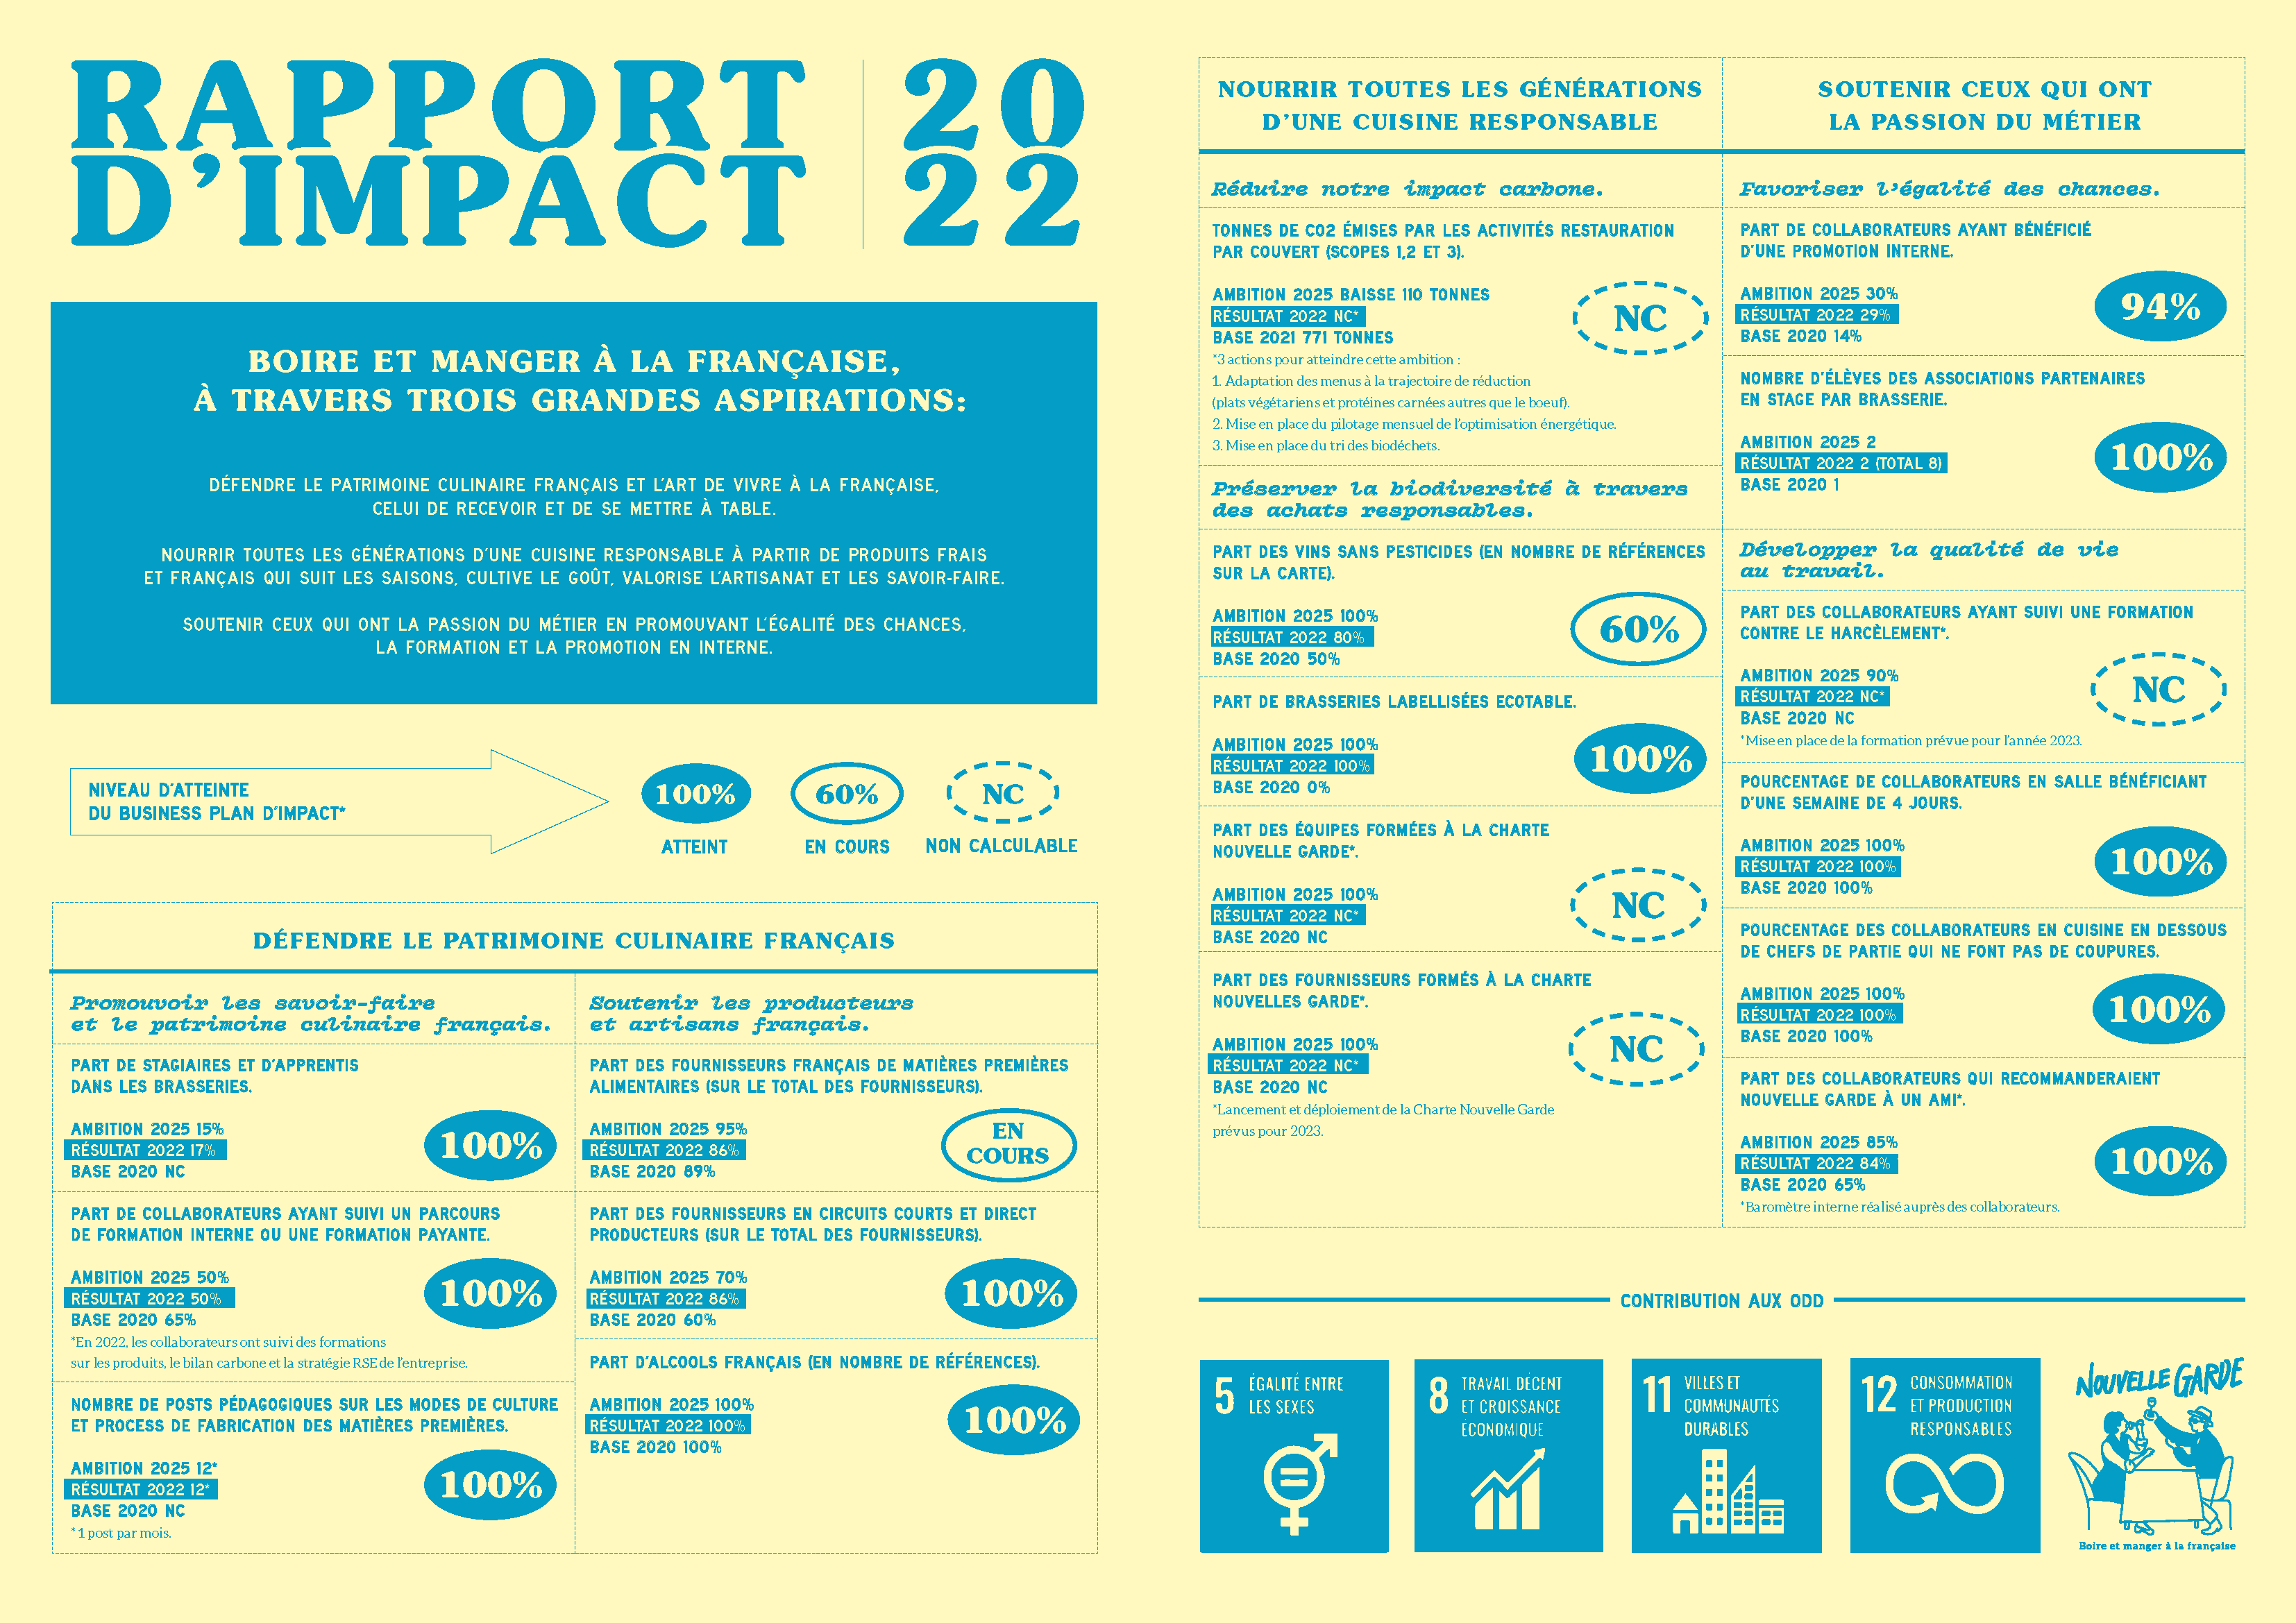 La Nouvelle Garde - Rapport d'impact 2022 - PDF